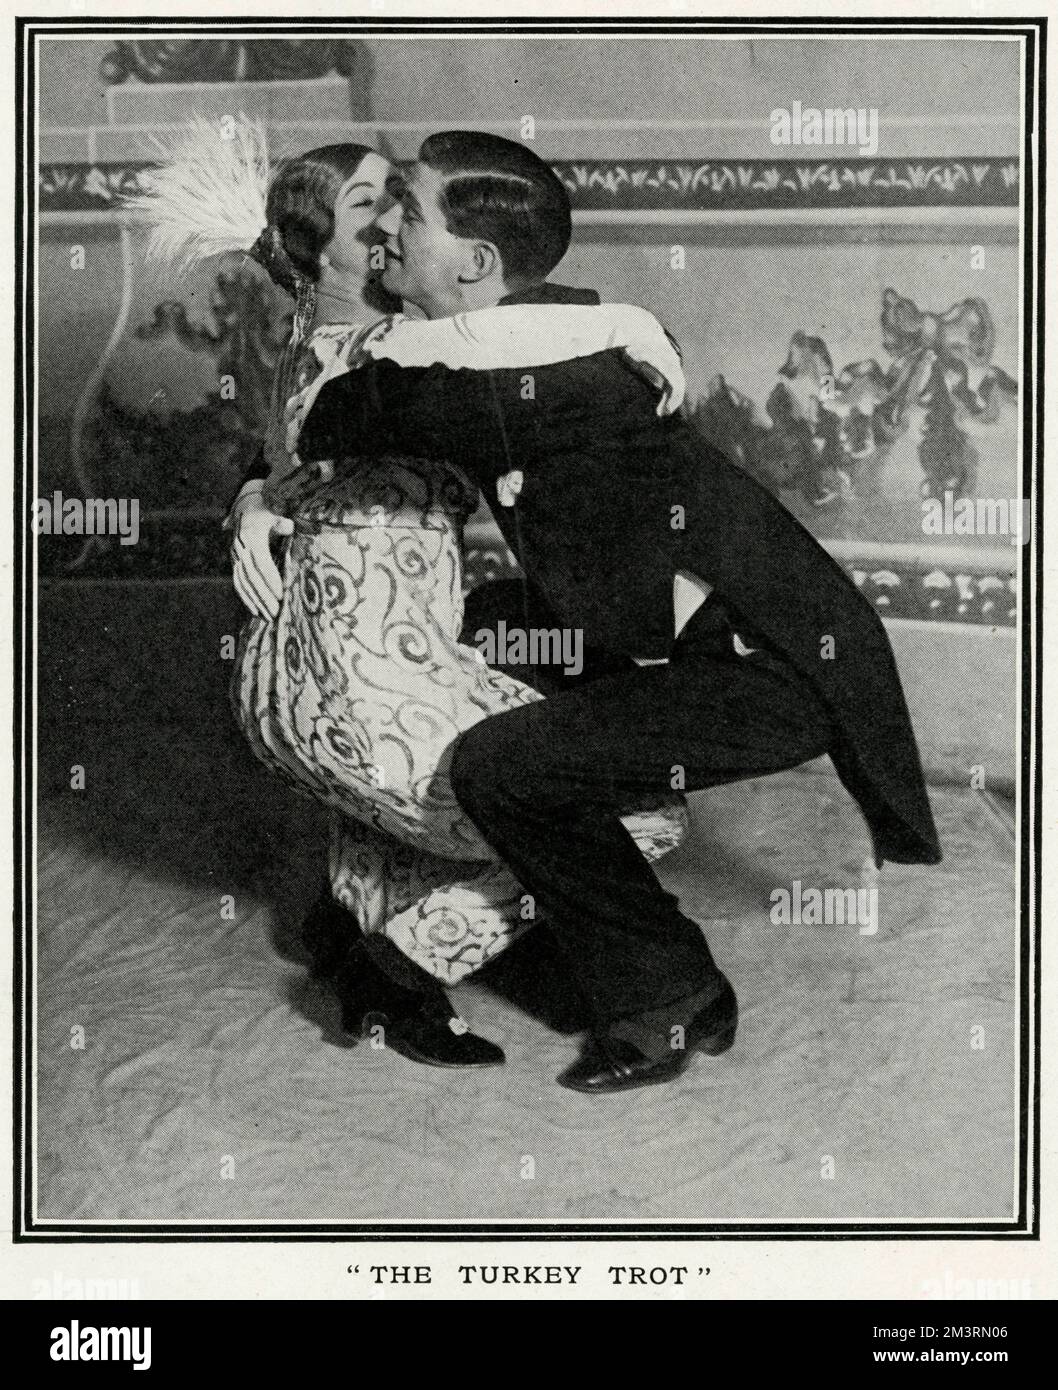 I ballerini Oscar e Suzette dimostrano uno dei nuovi danzatori da ballo che spaziano dalle sale da ballo londinesi, il Turkey Trot. Data: 1912 Foto Stock